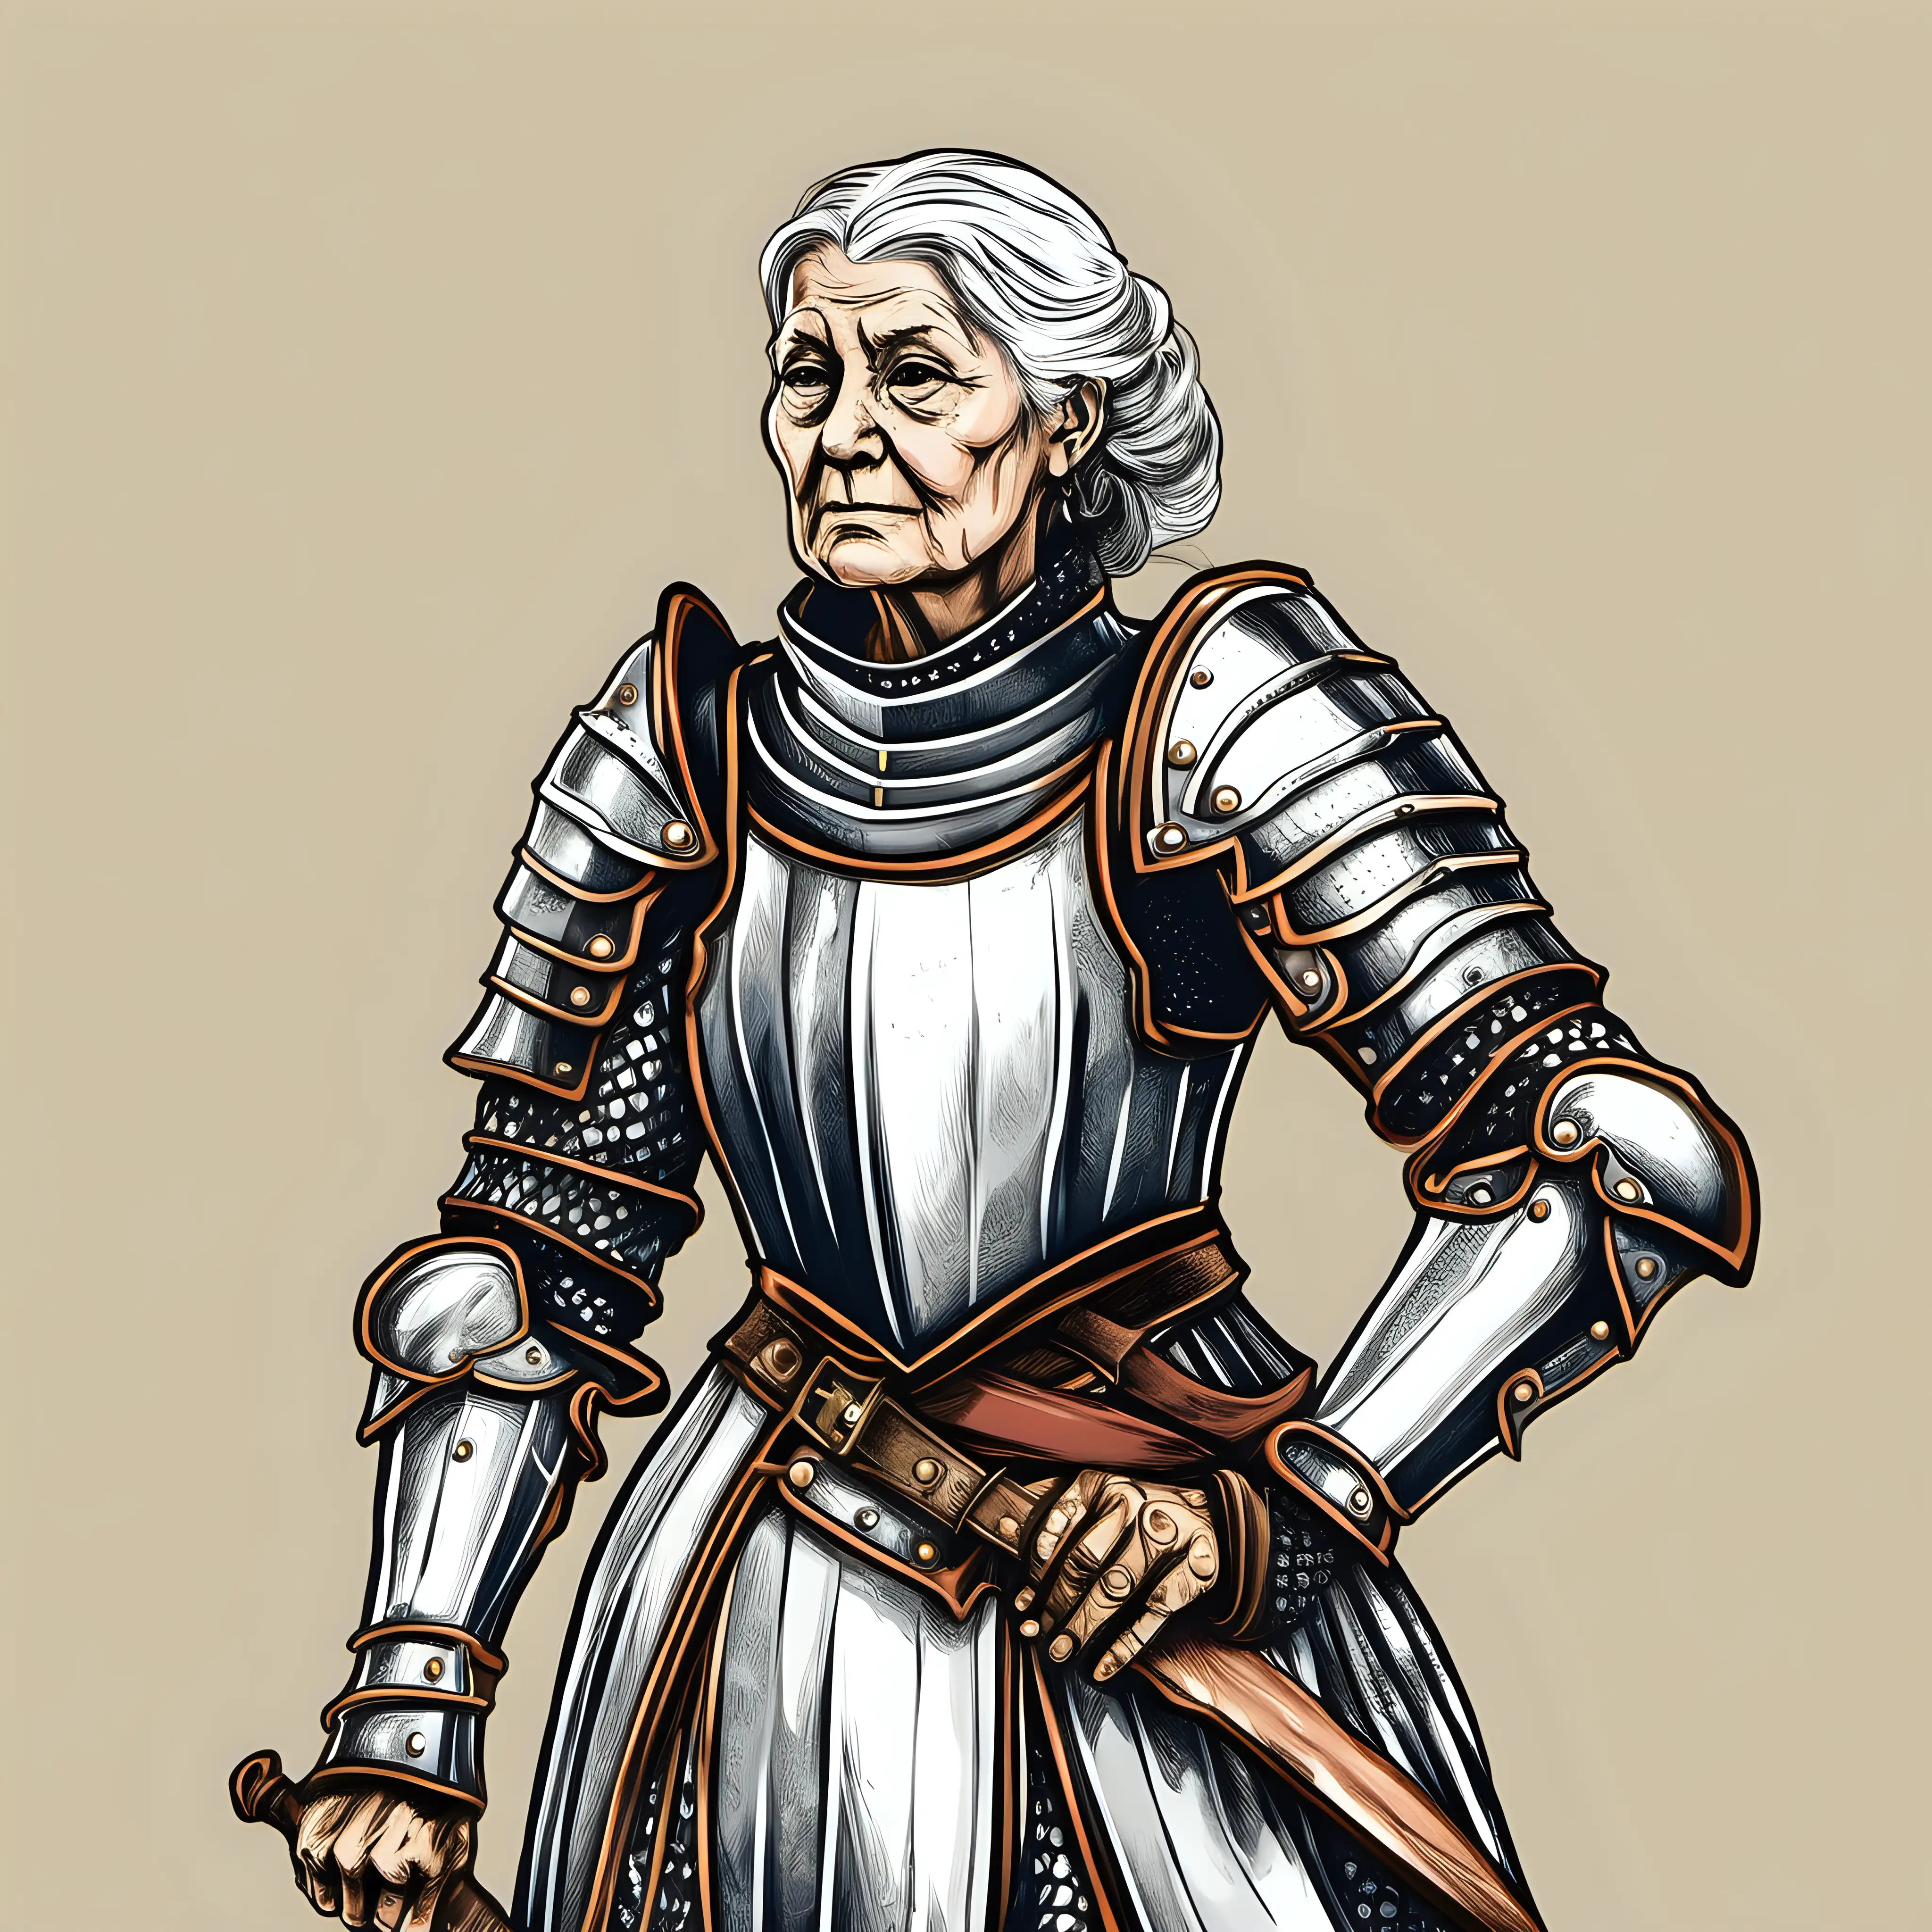 HandDrawn Illustration of Elderly Female in Historical Plate Armor